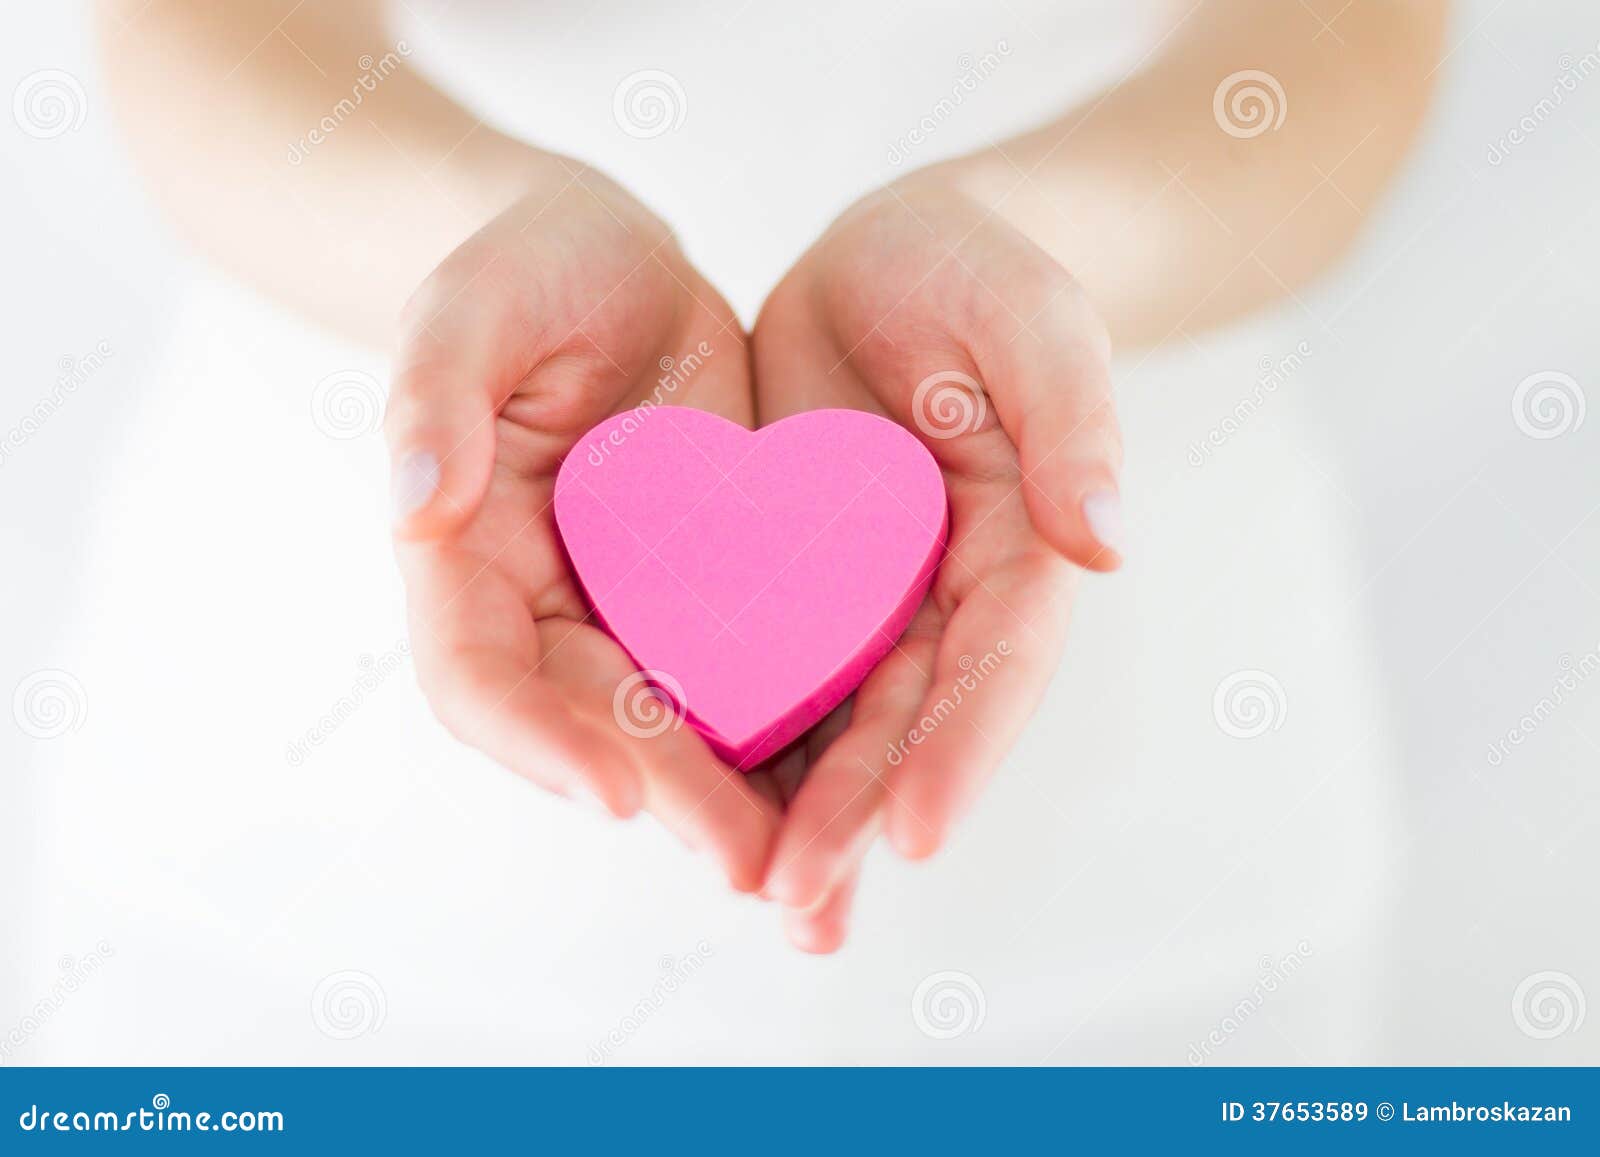 eros - hands offering a heart